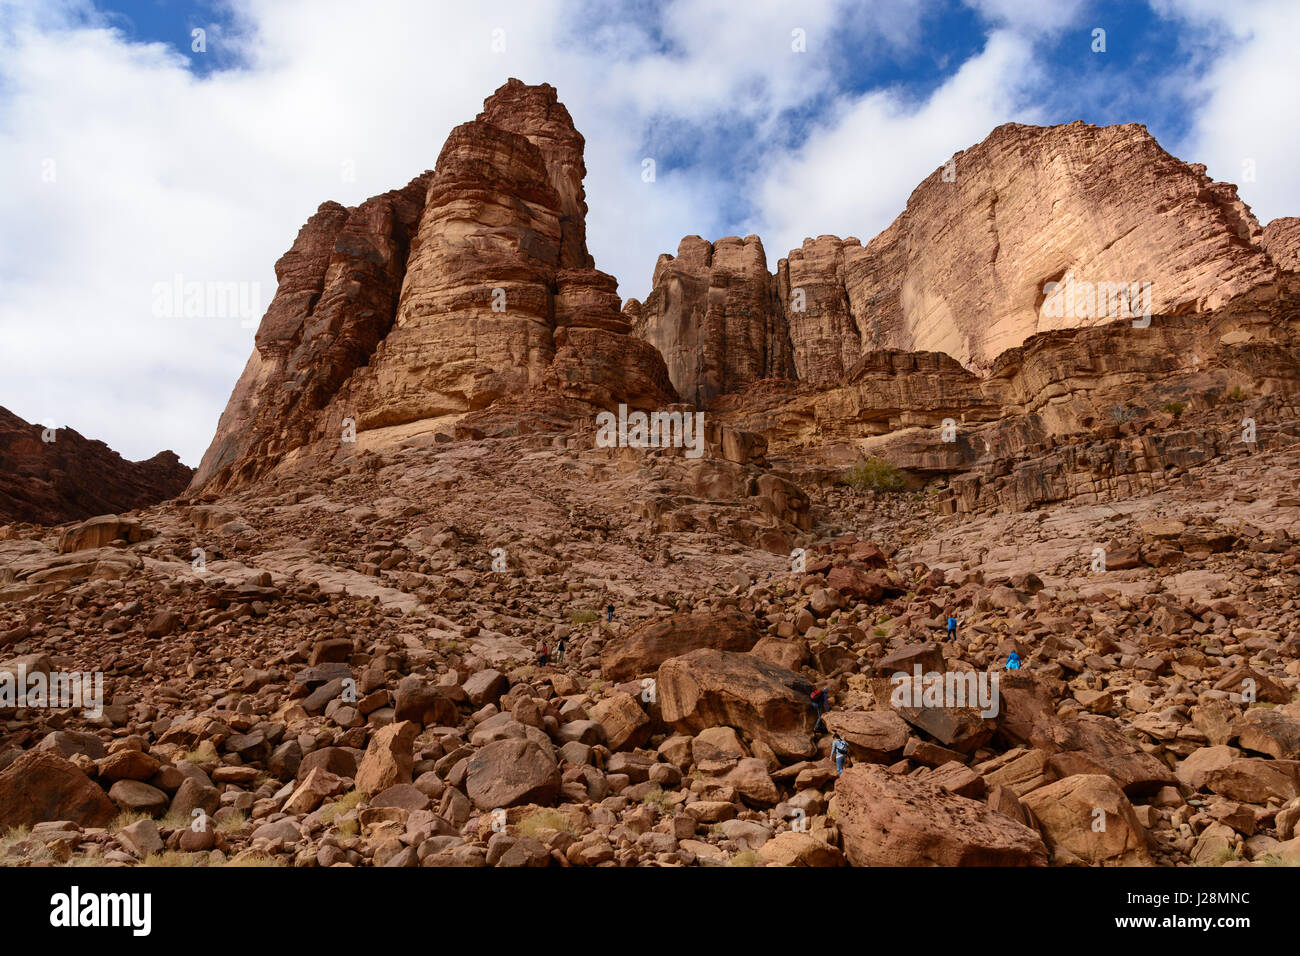 La Jordanie, Aqaba, Wadi Rum Government, un haut plateau désertique dans le sud de la Jordanie. UNESCO du patrimoine mondial naturel. Emplacement du film "Lawrence d'Arabie" Banque D'Images